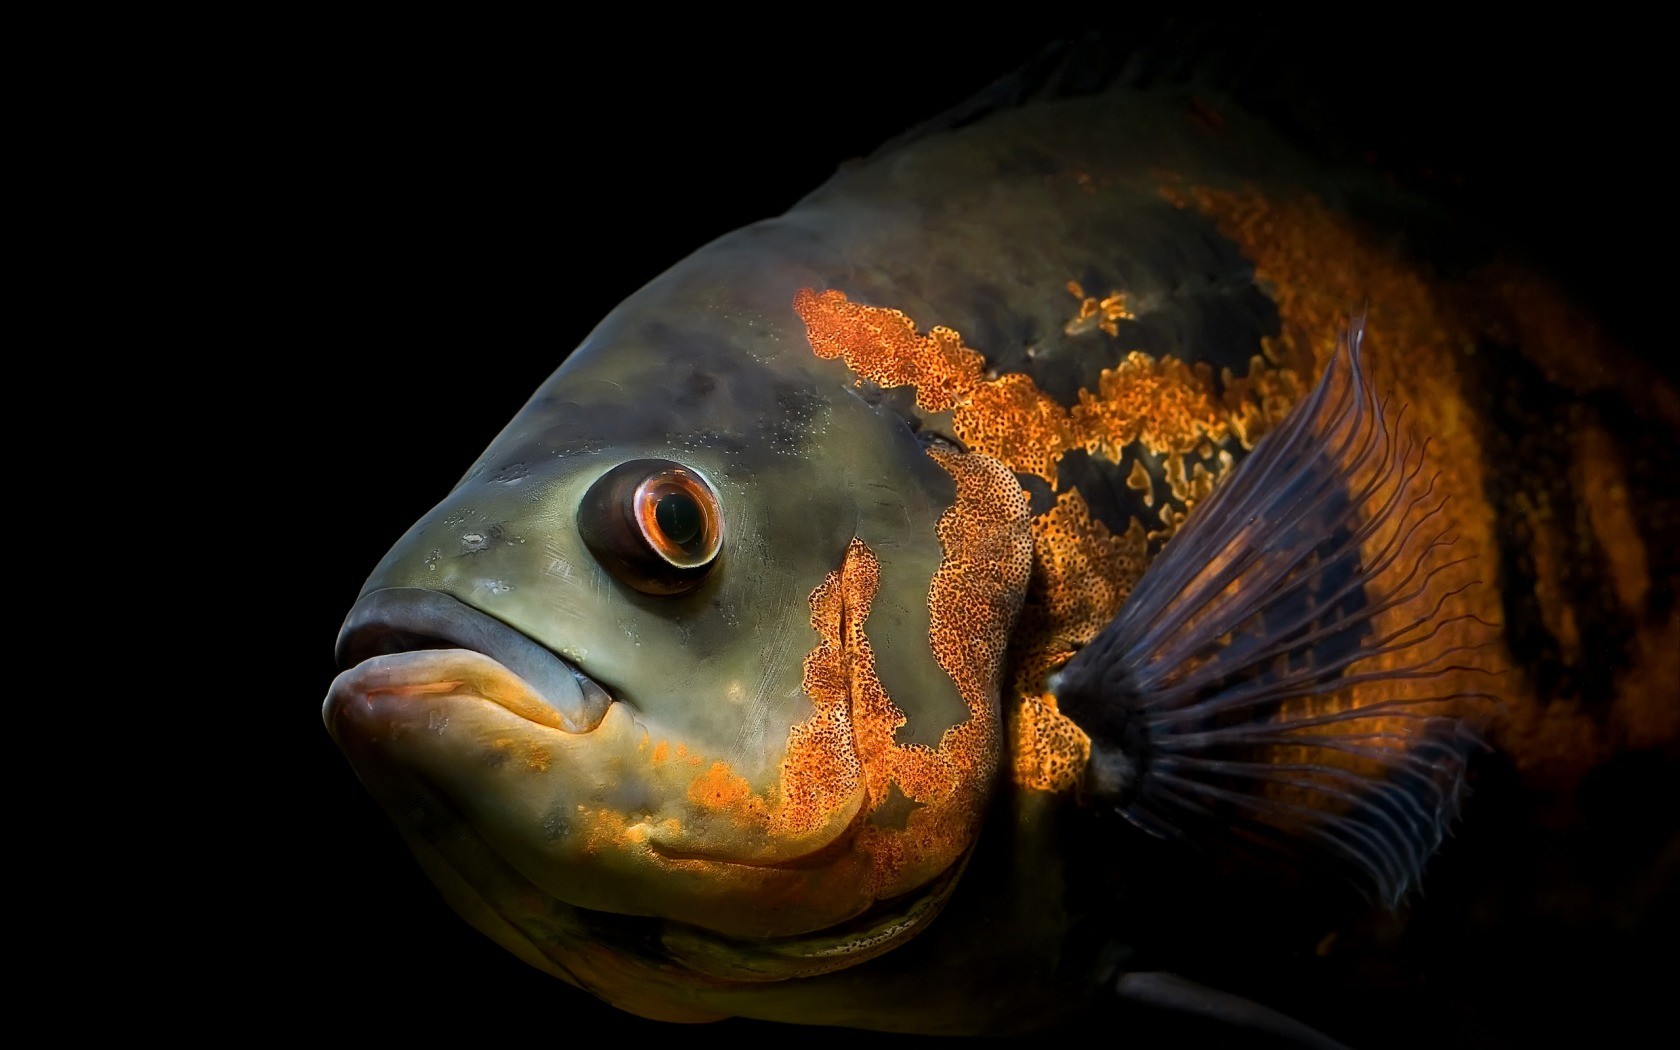 General 1680x1050 fish animals orange closeup